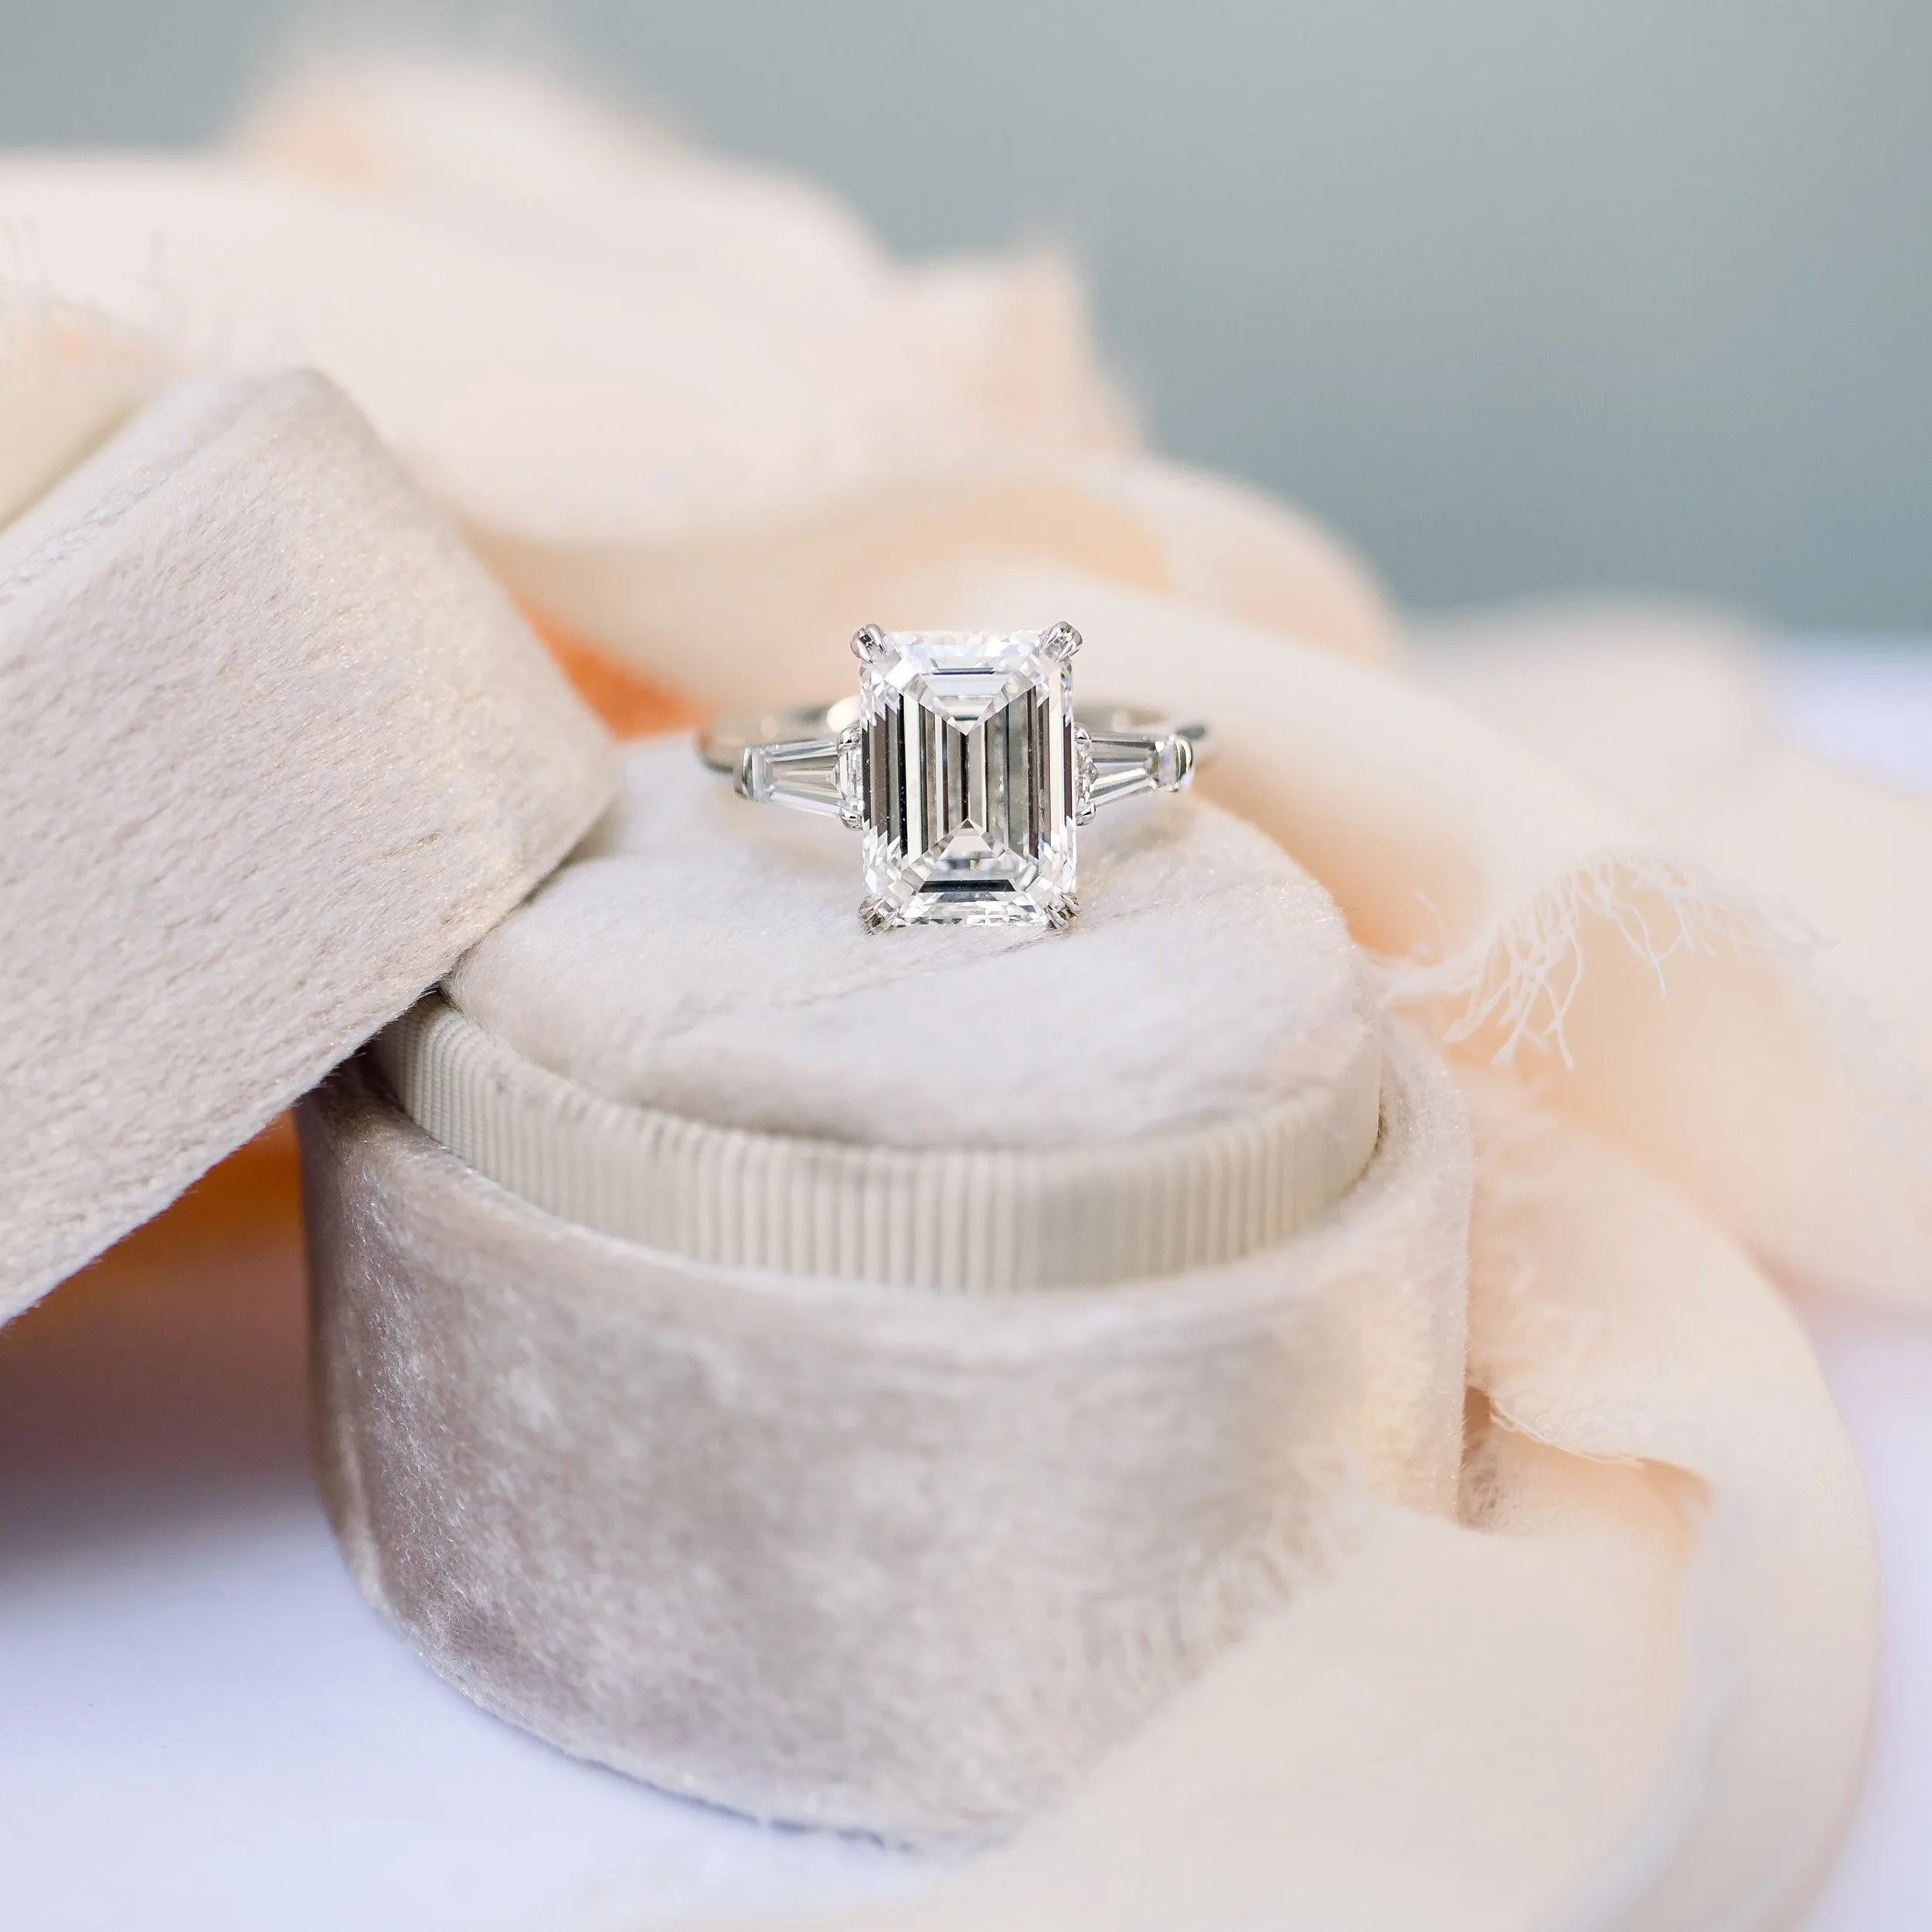 platinum 5 carat emerald cut lab diamond engagement ring with baguette side stones ada diamonds design ad 464